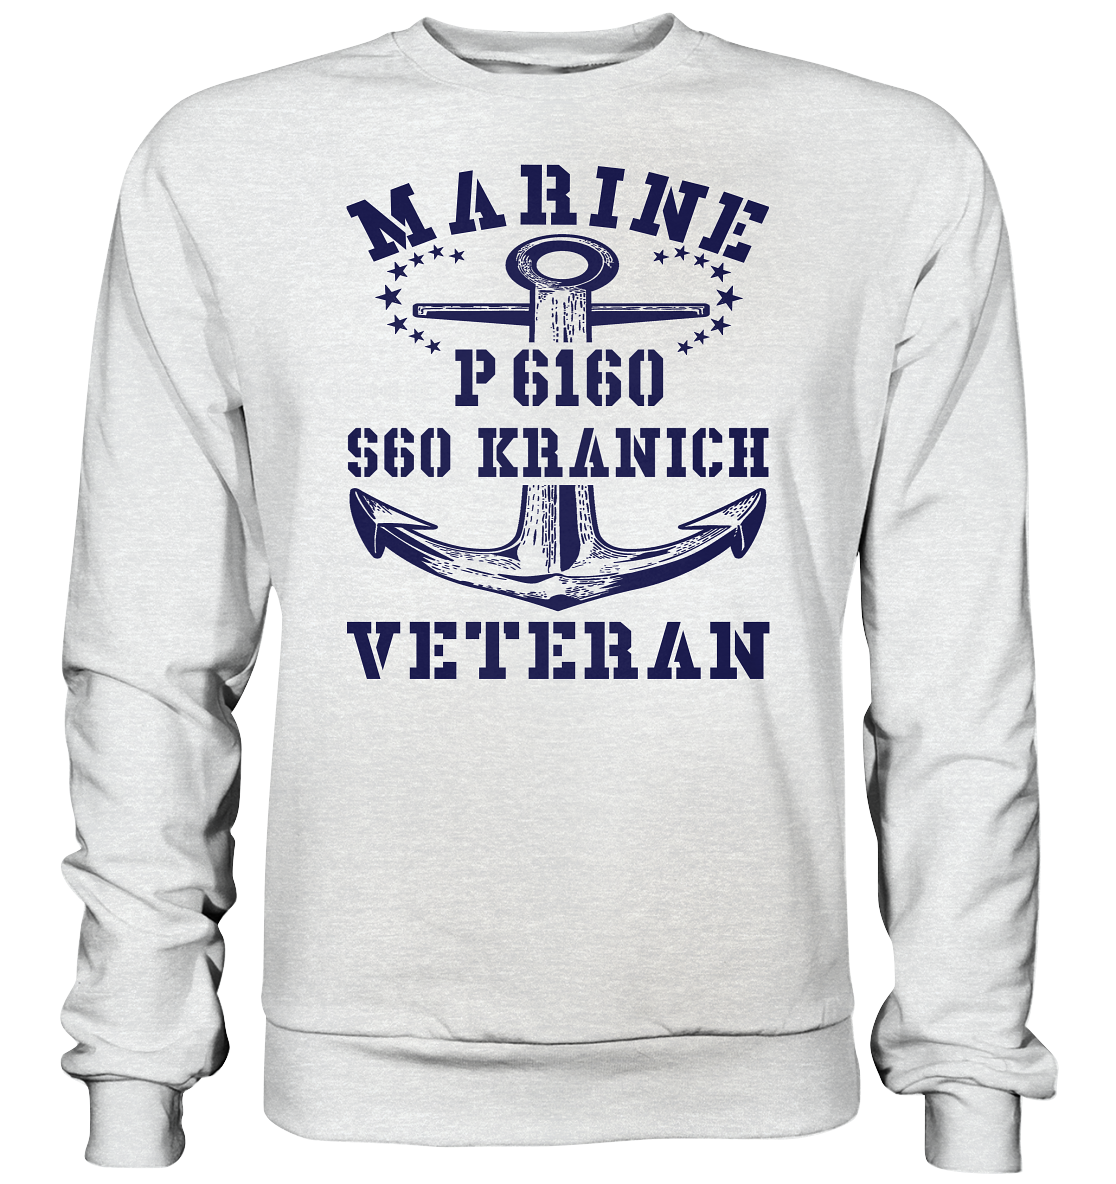 P6160 S60 KRANICH Marine Veteran - Premium Sweatshirt